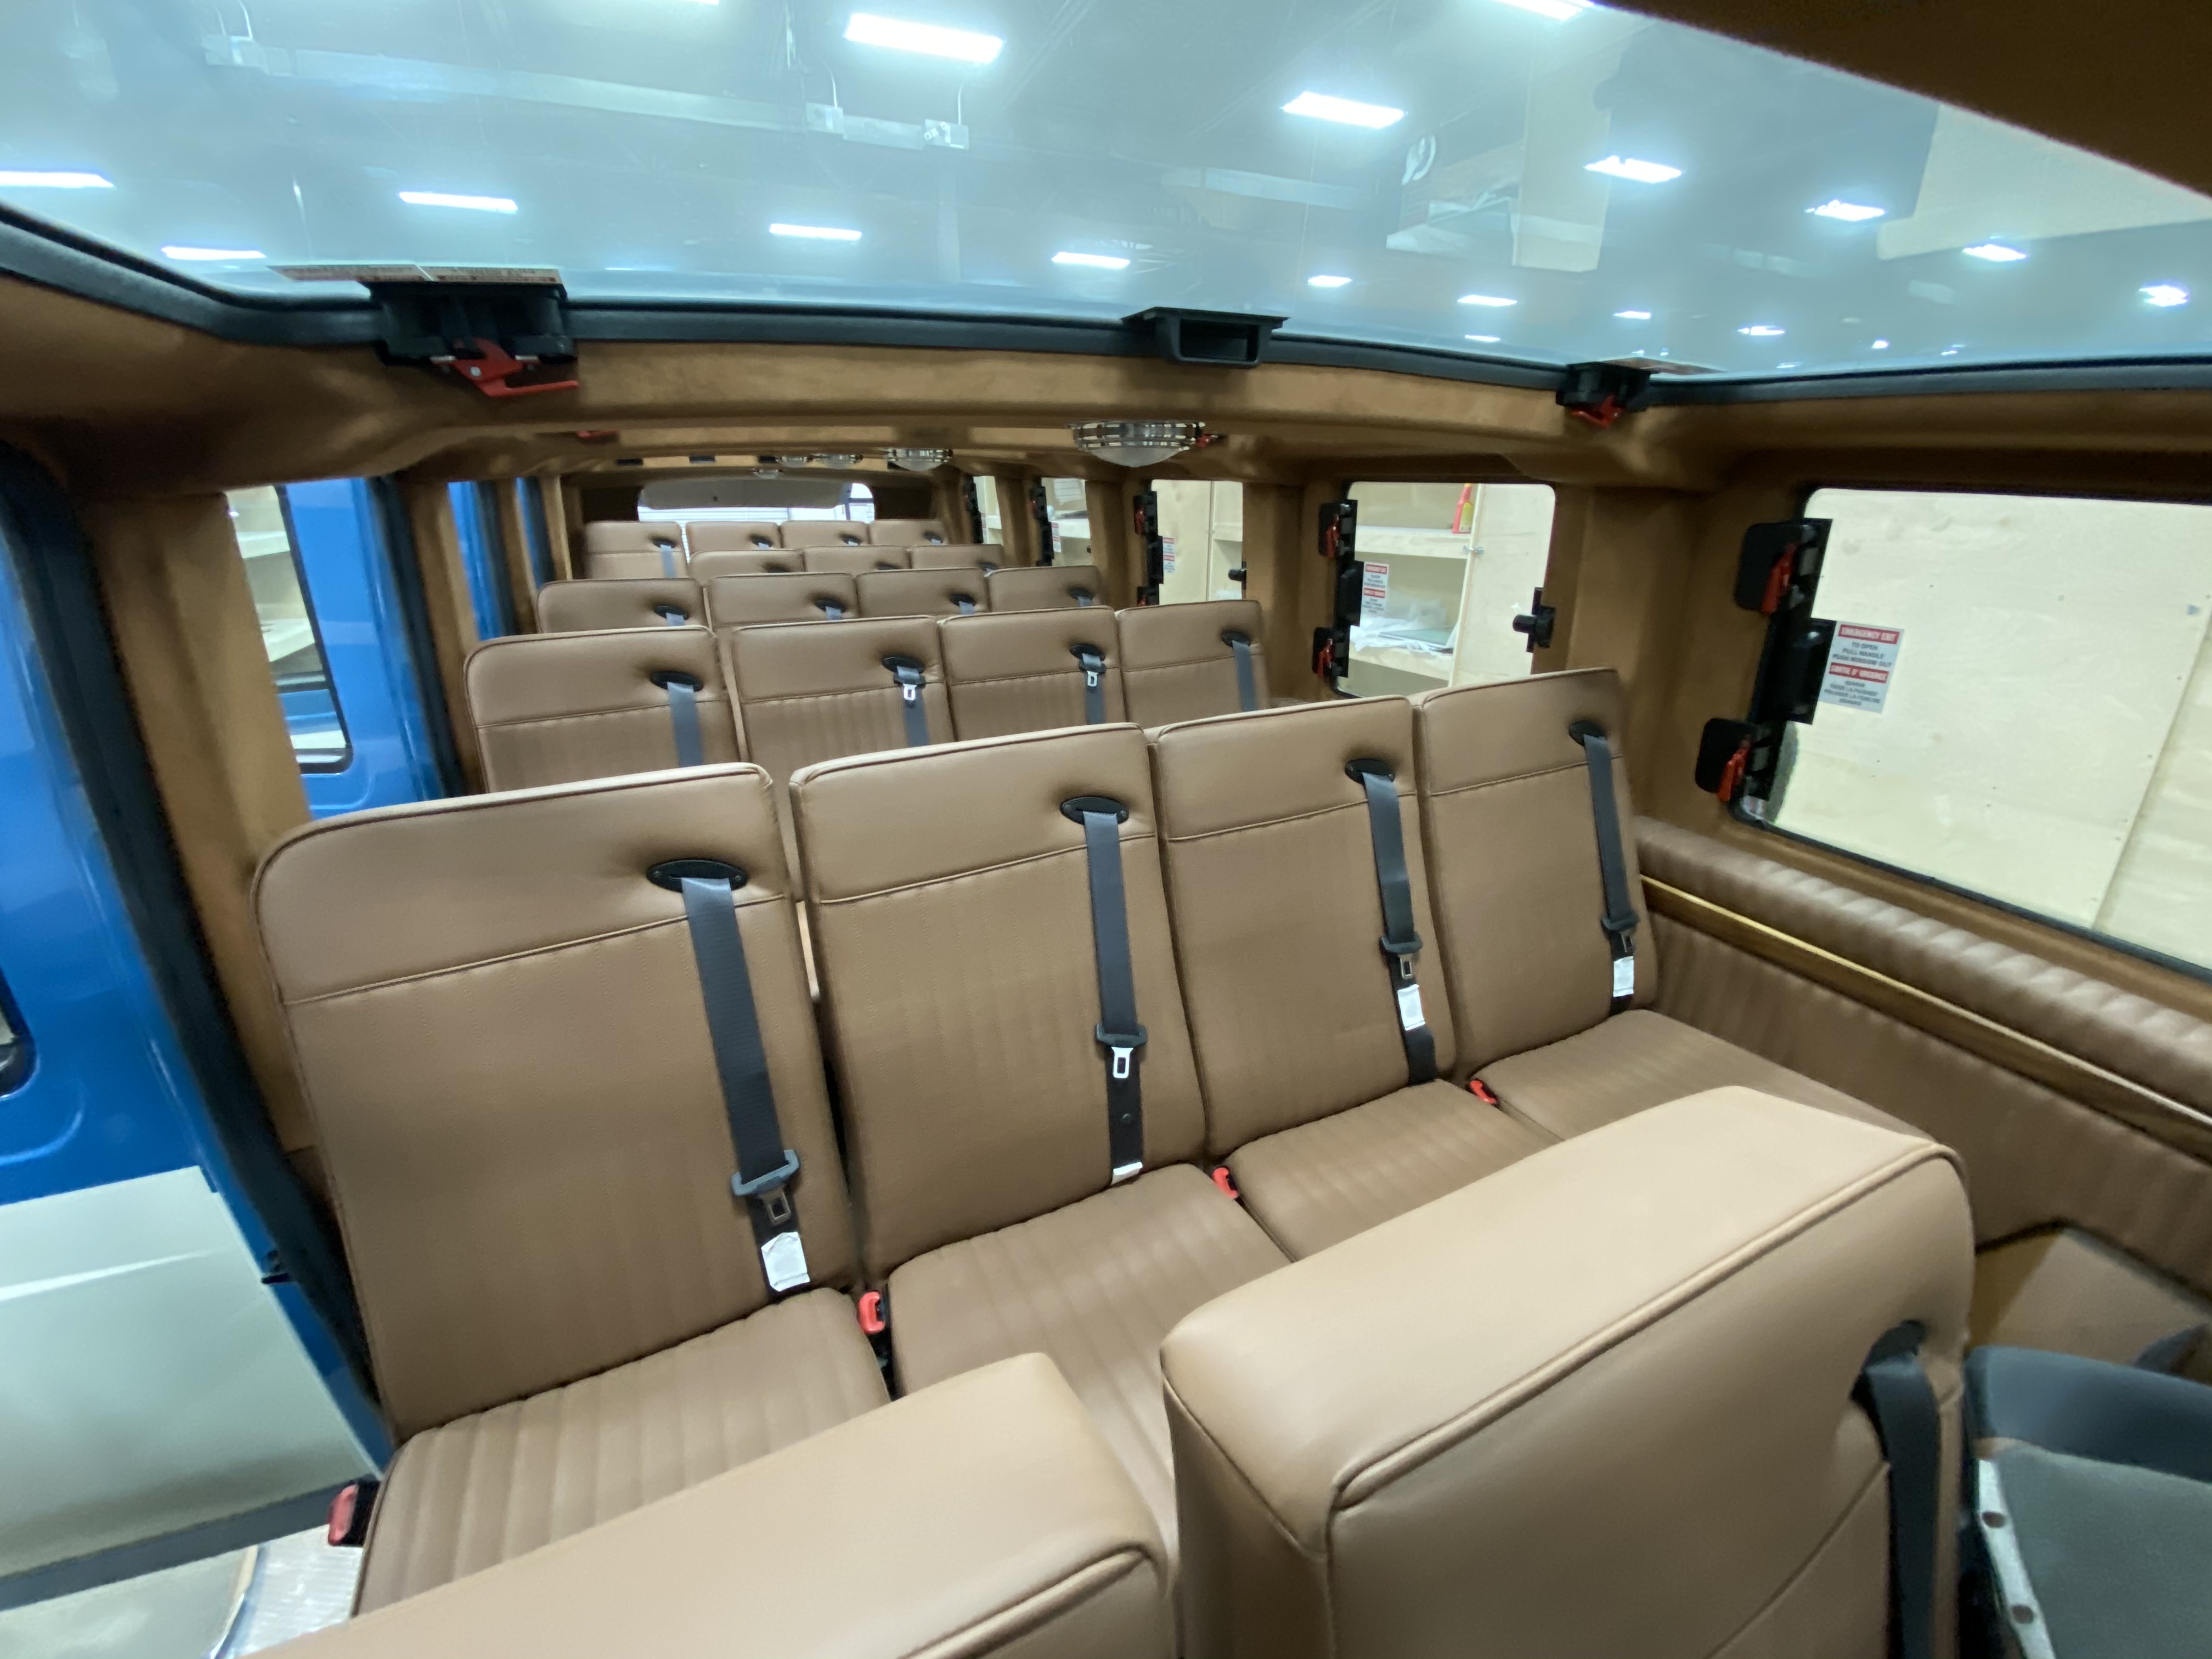 Concept vehicle interiors at Prefix